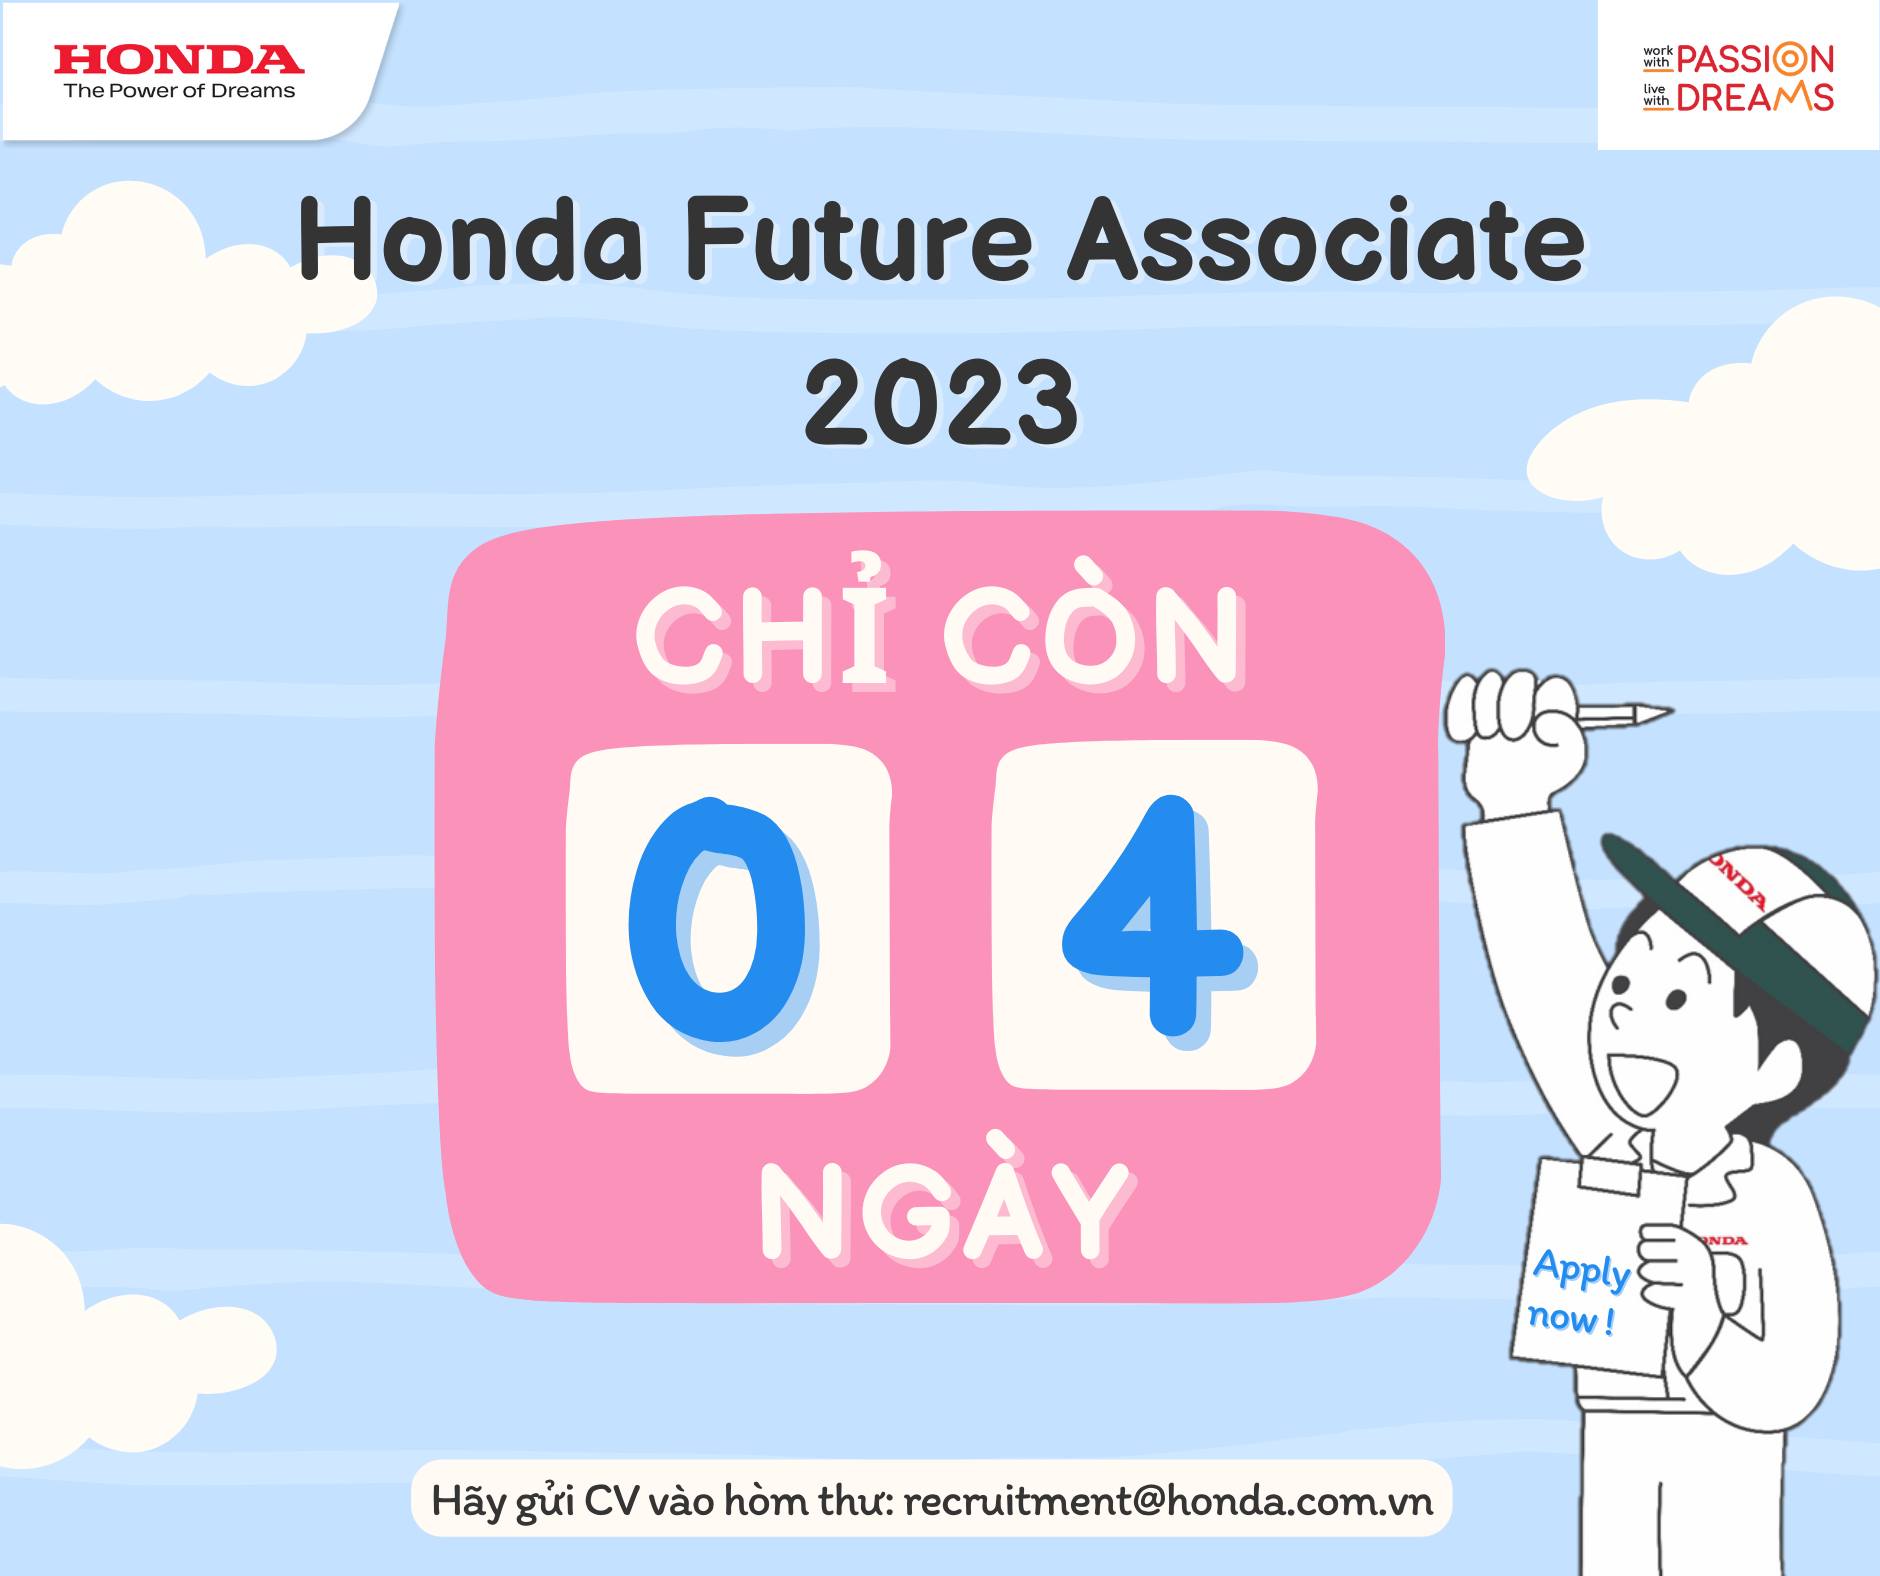 Honda Future Associate Program 2023 – Đếm ngược 04 ngày